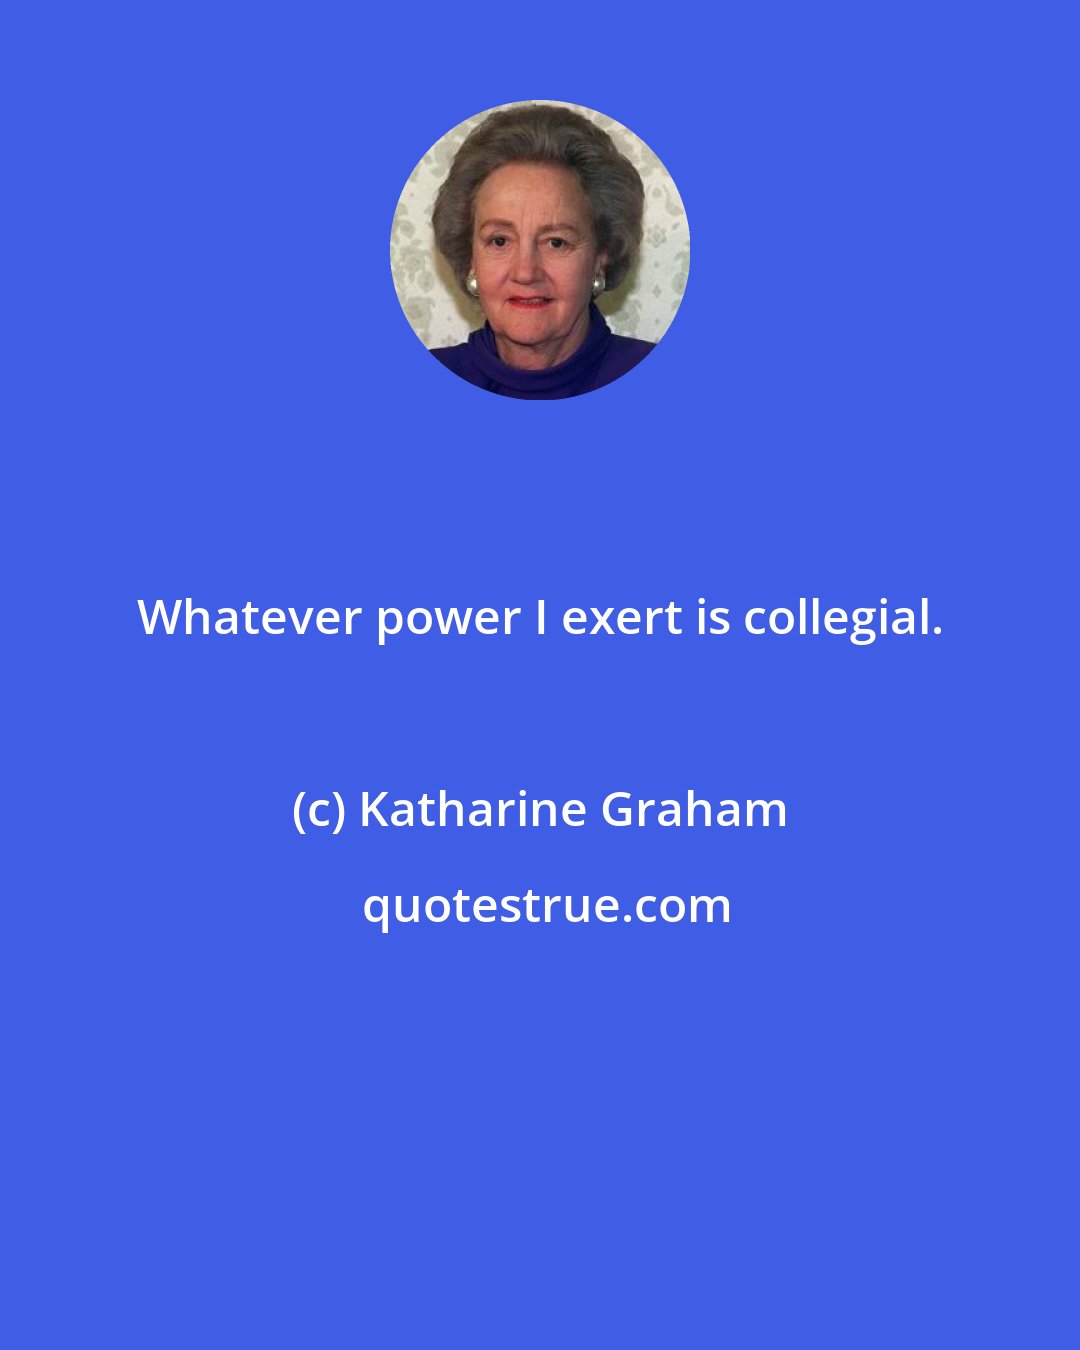 Katharine Graham: Whatever power I exert is collegial.